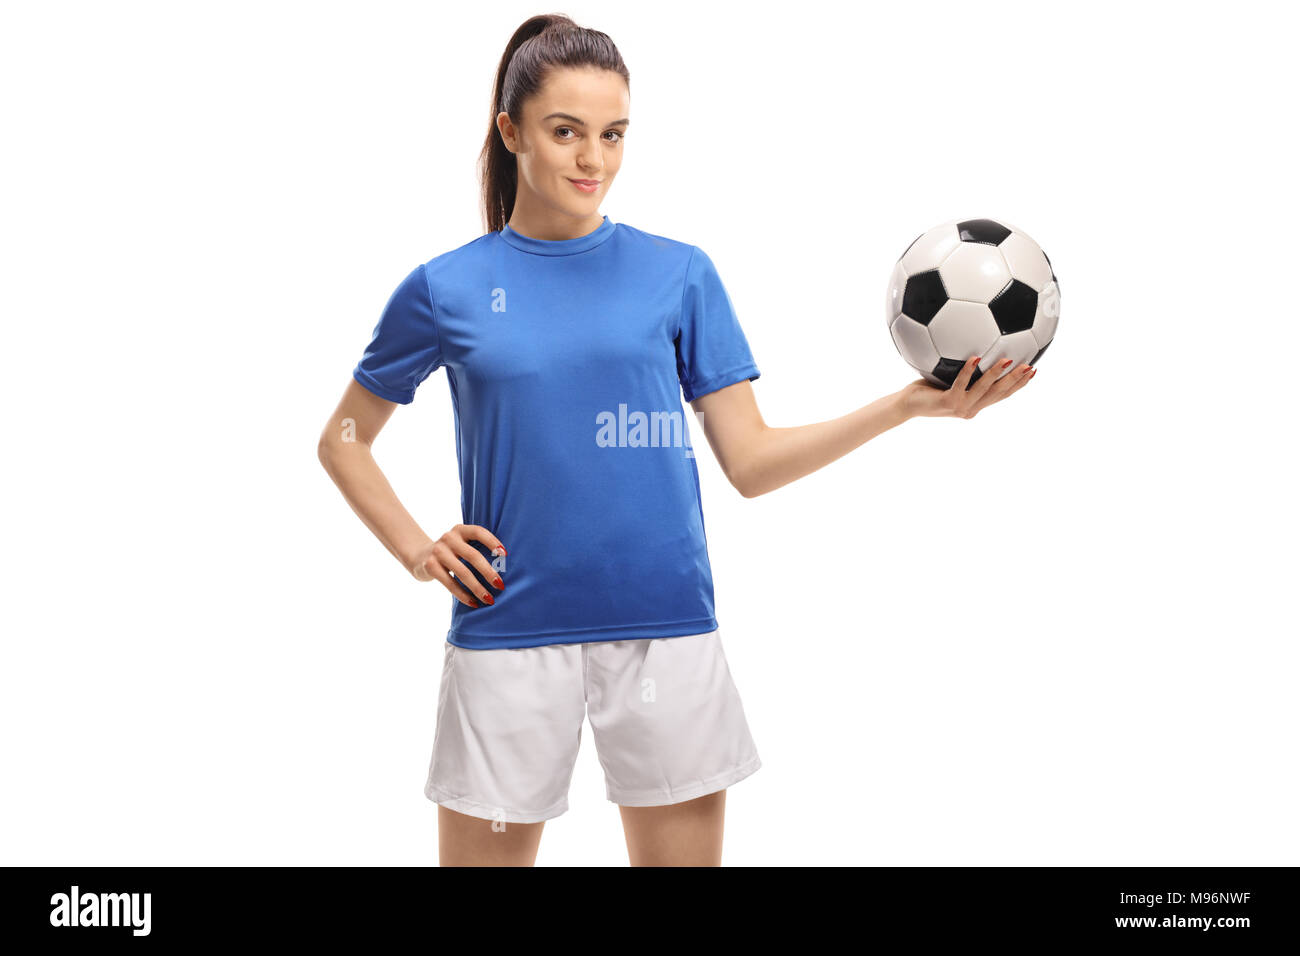 Calcio femminile player tenendo un calcio isolati su sfondo bianco Foto Stock